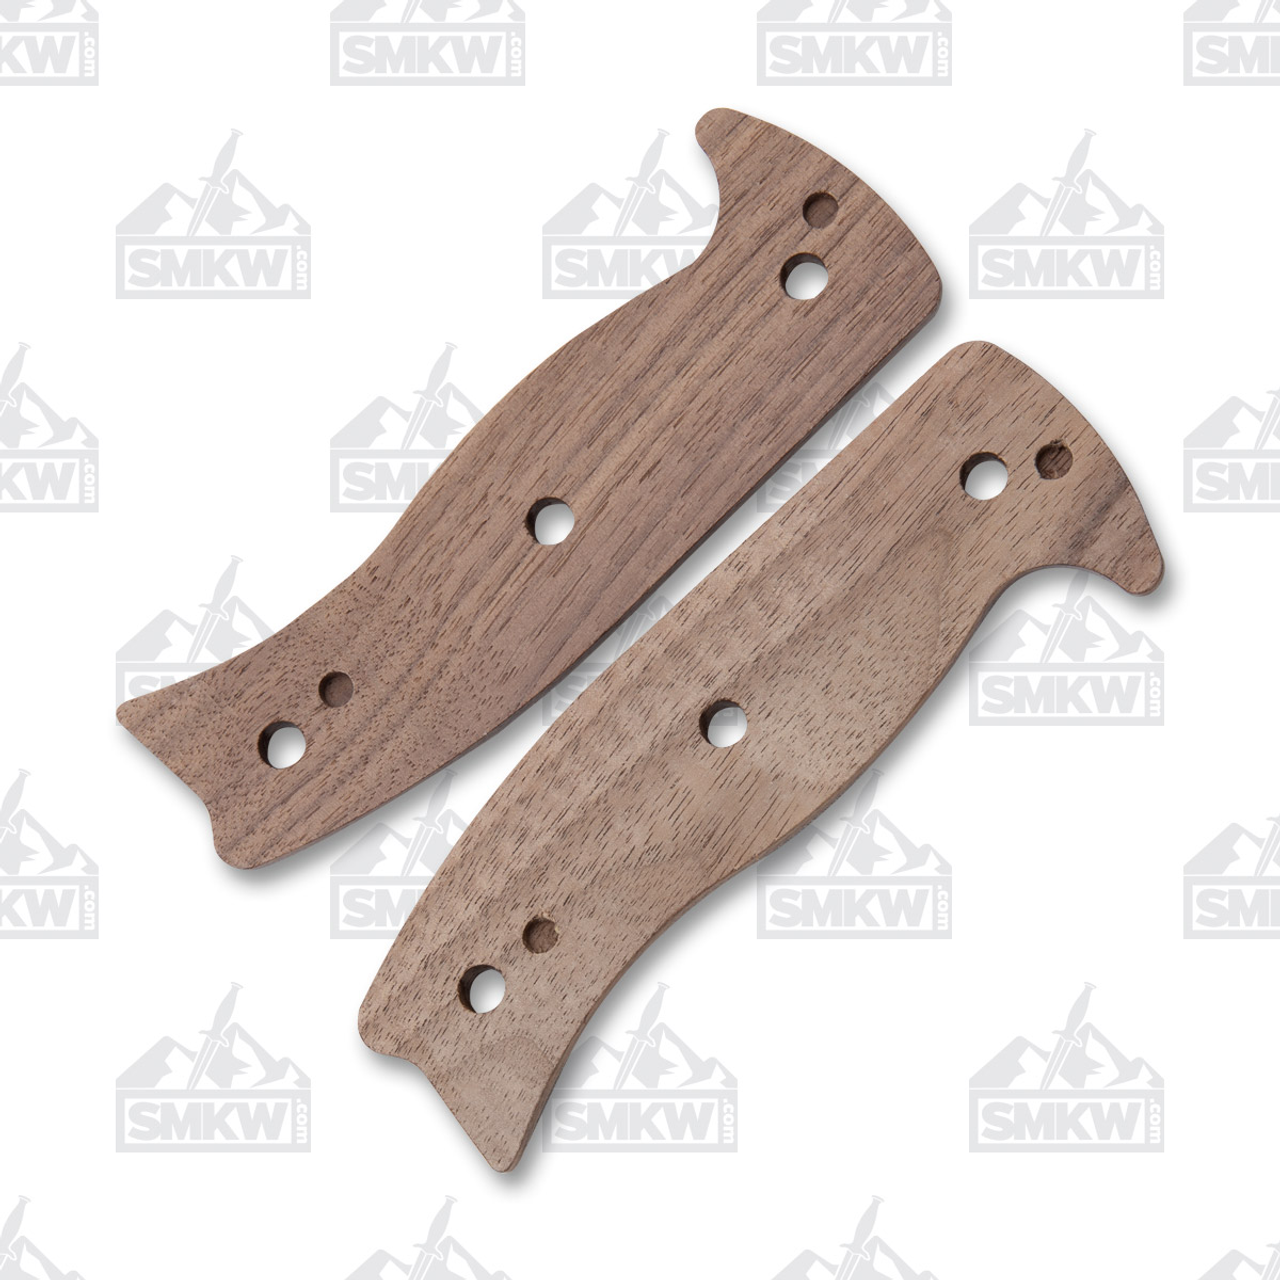 ESEE 6 HMK Walnut Knife Handle Scales - Smoky Mountain Knife Works